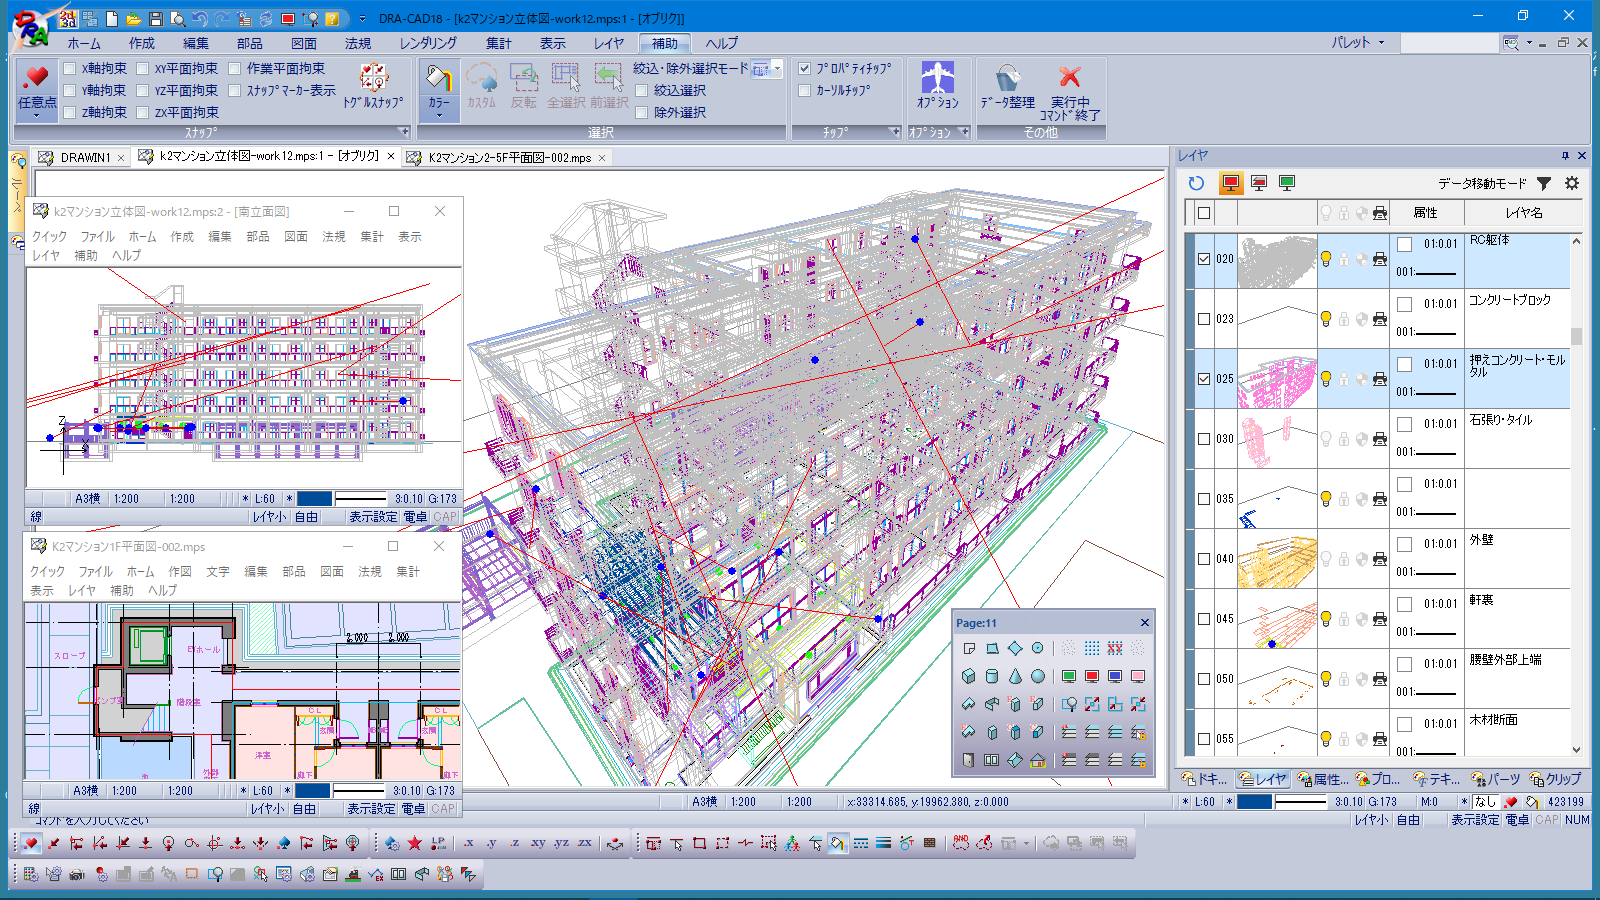 「DRA-CAD18」メイン画面のイメージ